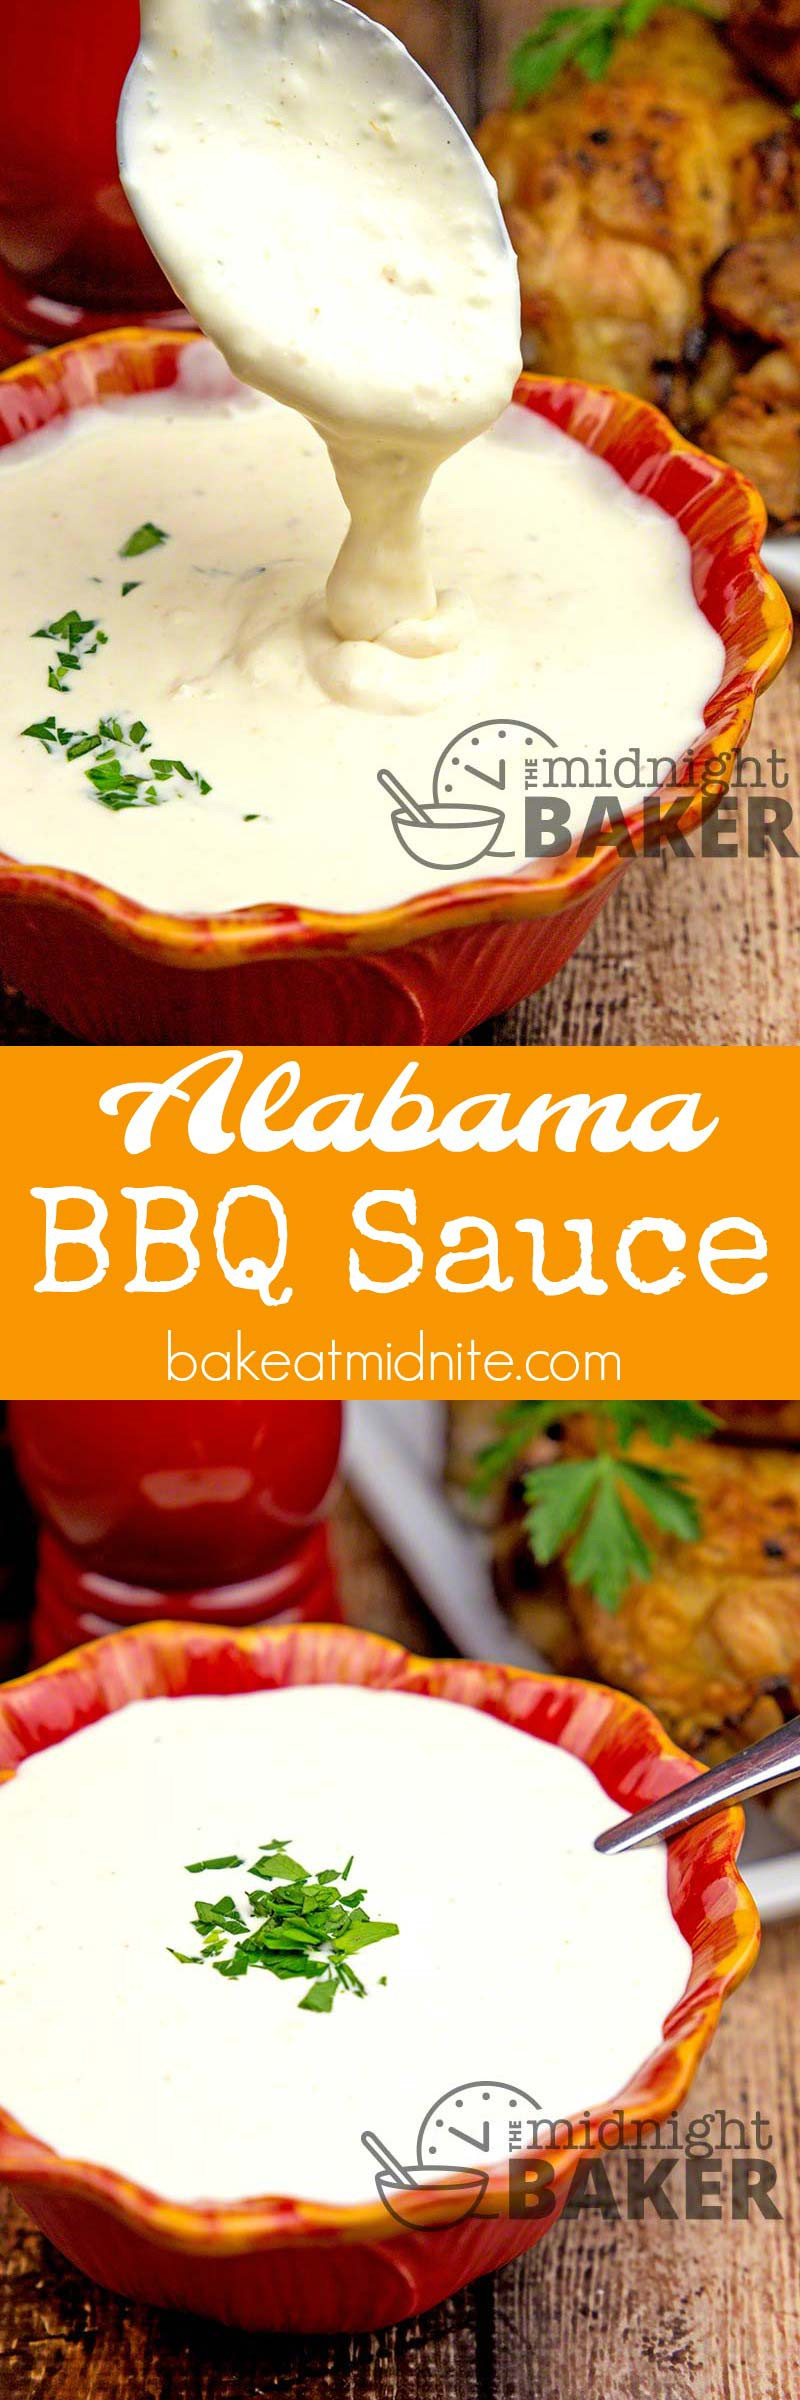 Alabama Bbq Sauce
 Alabama BBQ Sauce The Midnight Baker